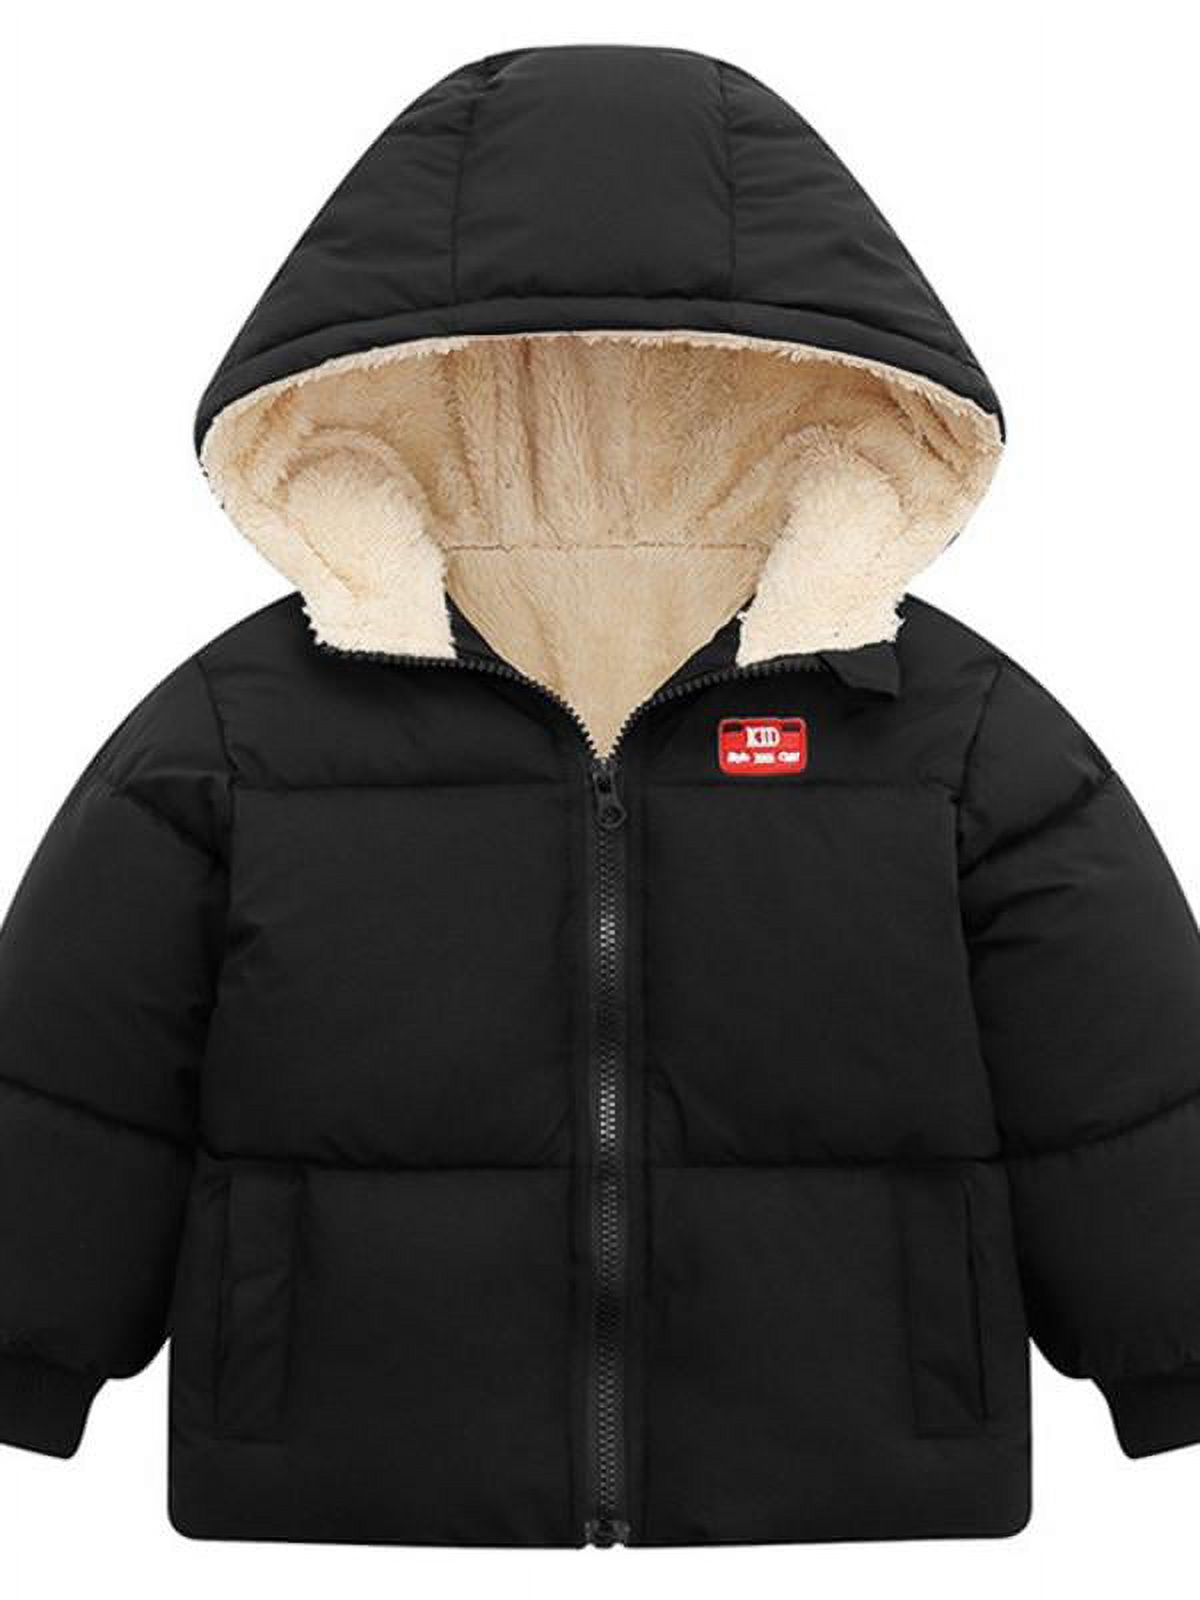 Topumt Boys Girls Hooded Down Jacket Winter Warm Fleece Coat Windproof Zipper Puffer Outerwear 1T-6T - image 1 of 3